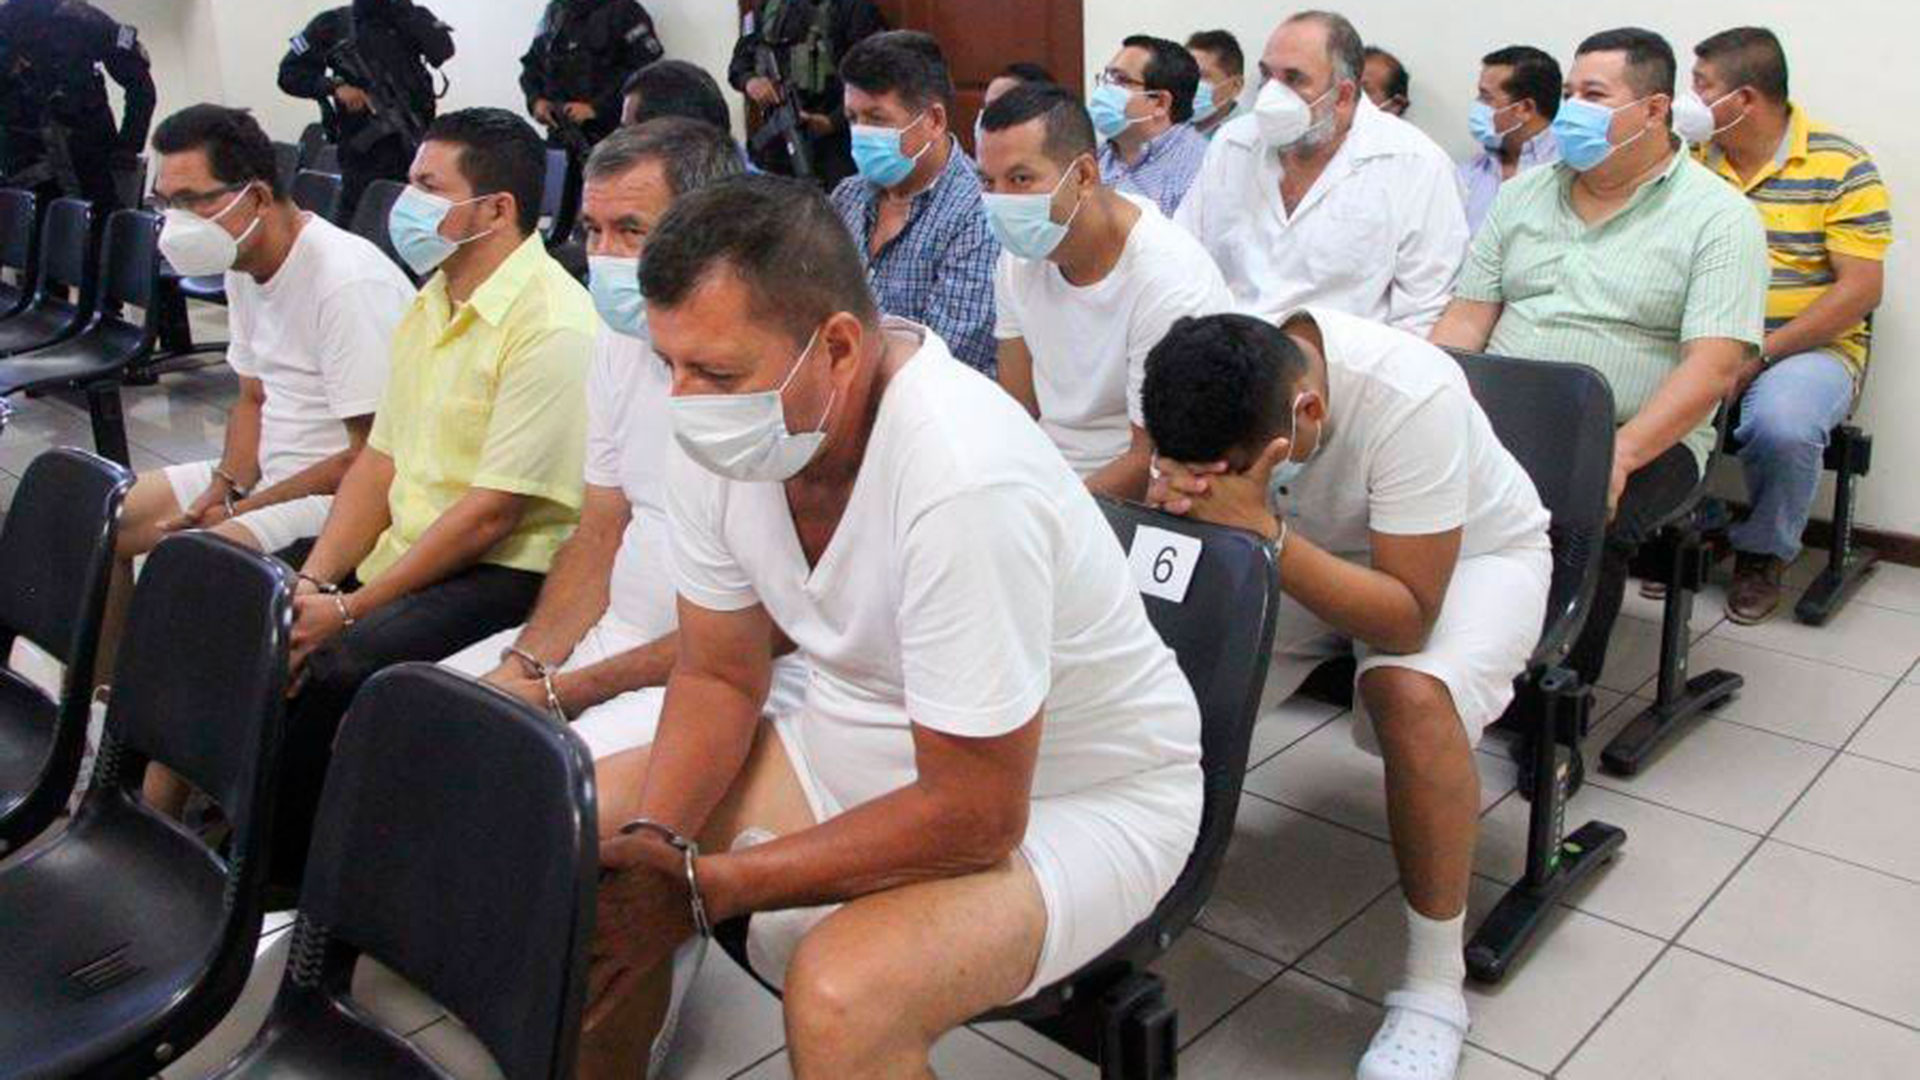 Ever Henríquez Cruz (camisa amarilla) durante una audiencia judicial en El Salvador.